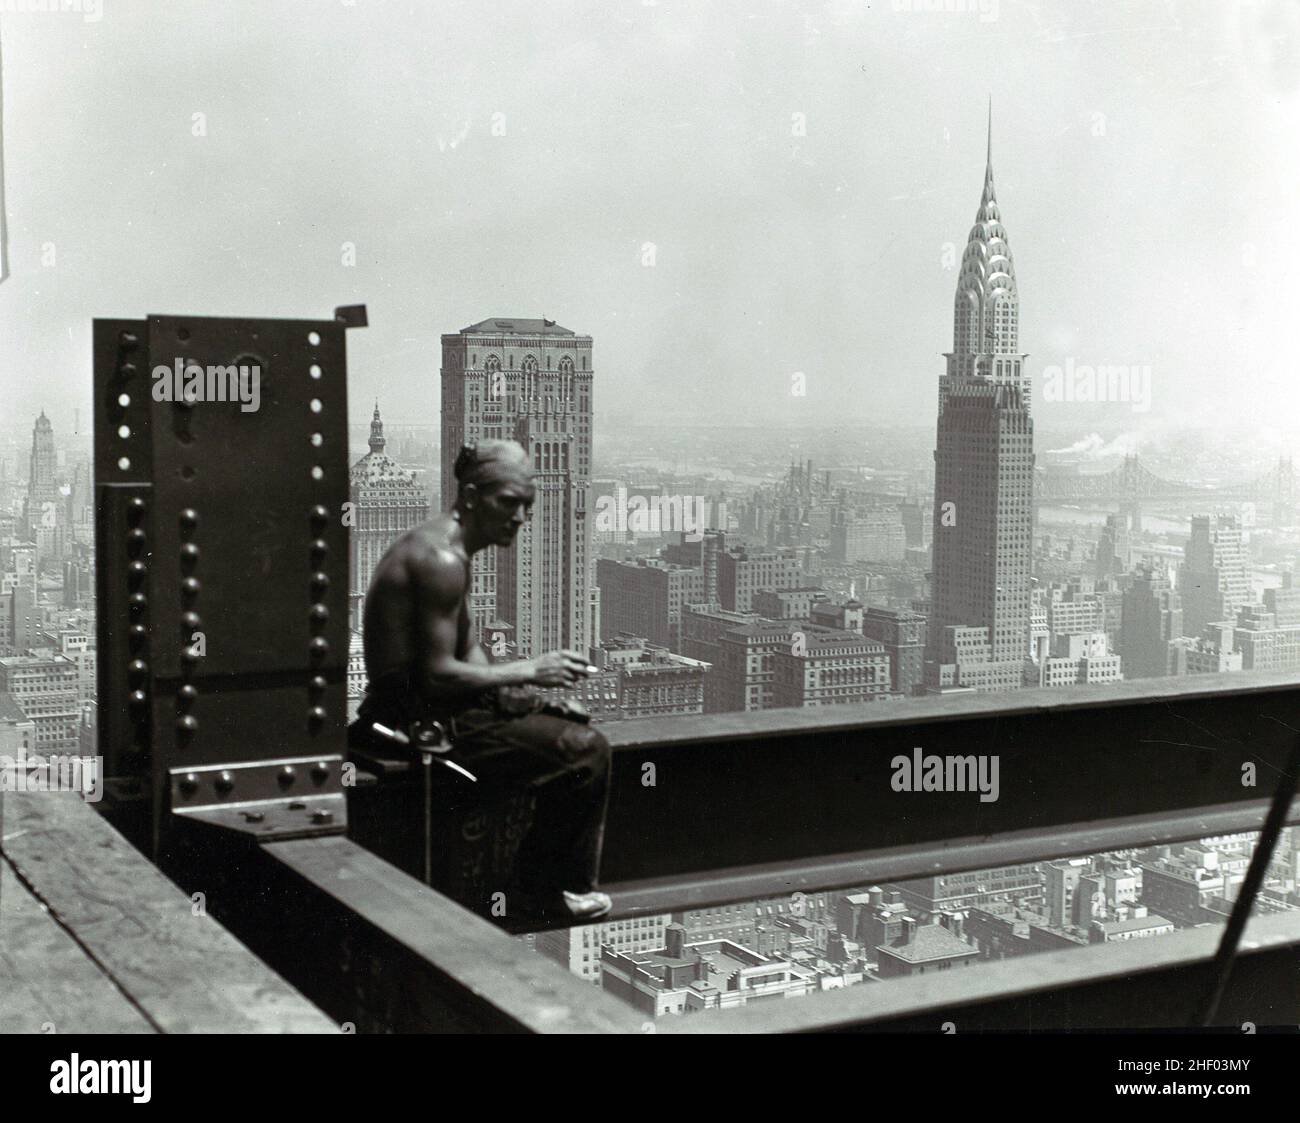 Ouvrier de la construction sur l'Empire State Building, 1930s.Photographie de Lewis Hine.Photo d'époque de New York. Banque D'Images